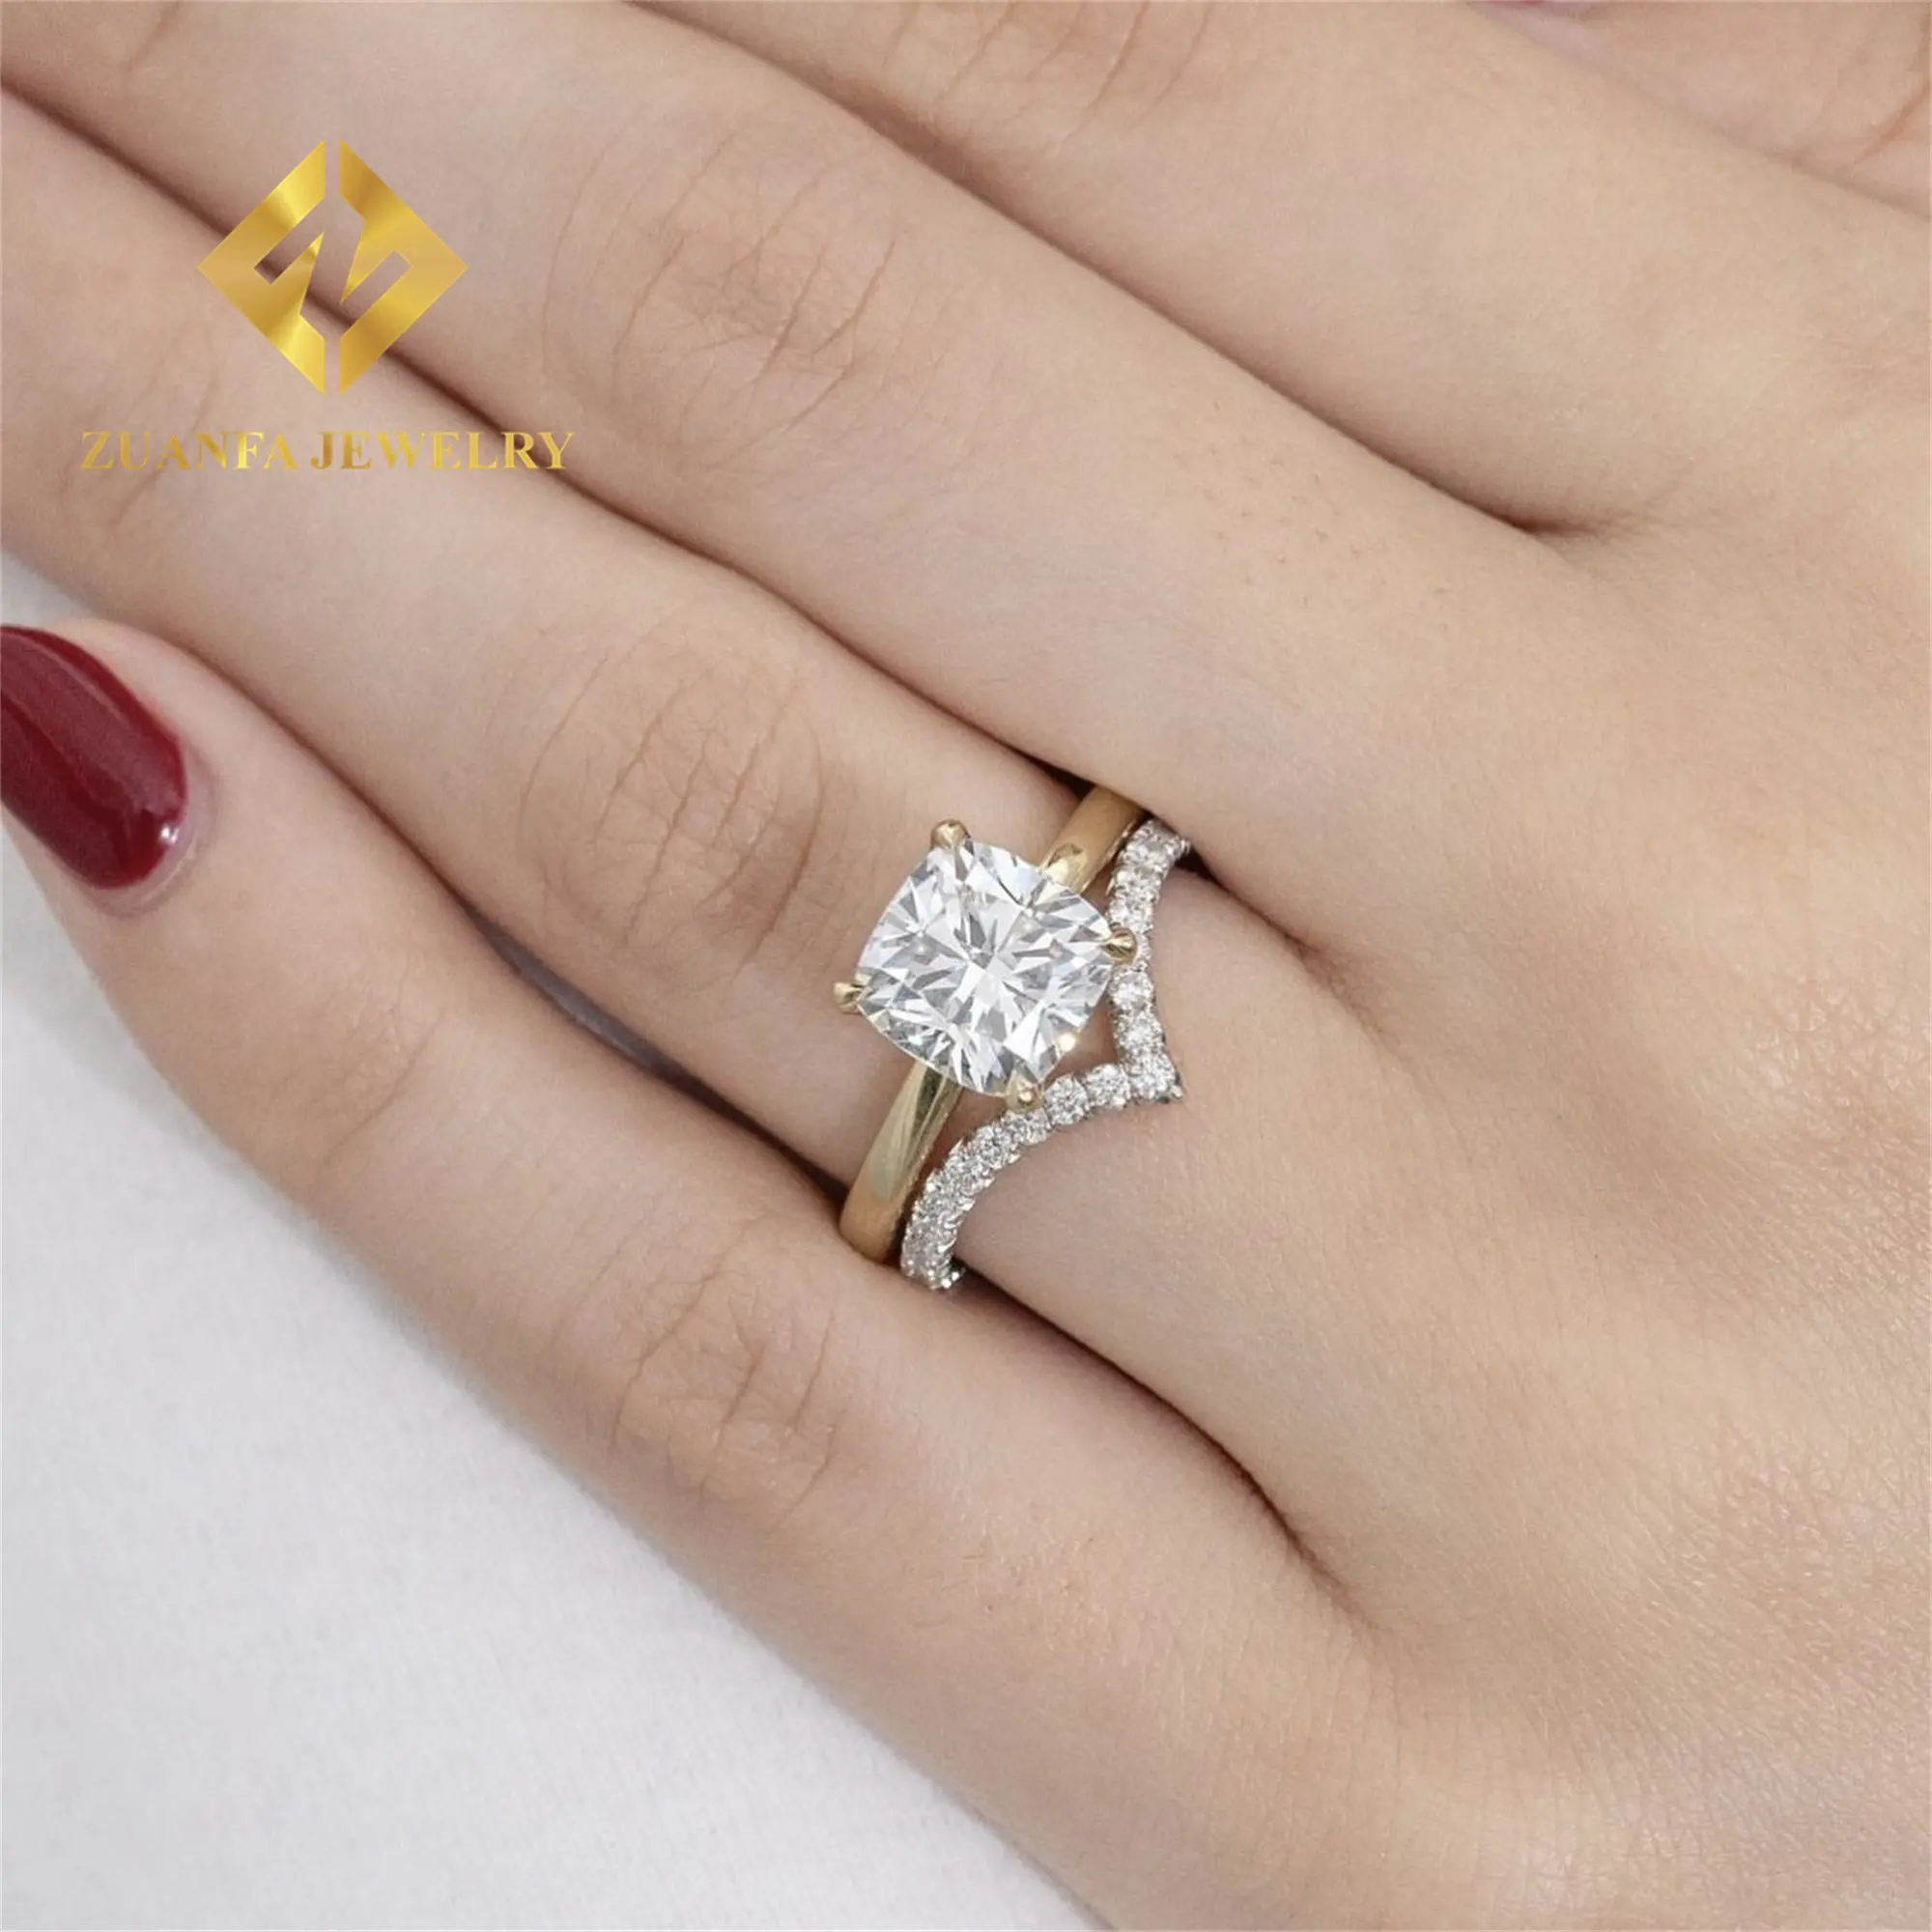 14K oro amarillo realeza brillante nupcial boda joyería VVS1 1.5Ct cojín Moissanite diamante compromiso impresionante banda anillo